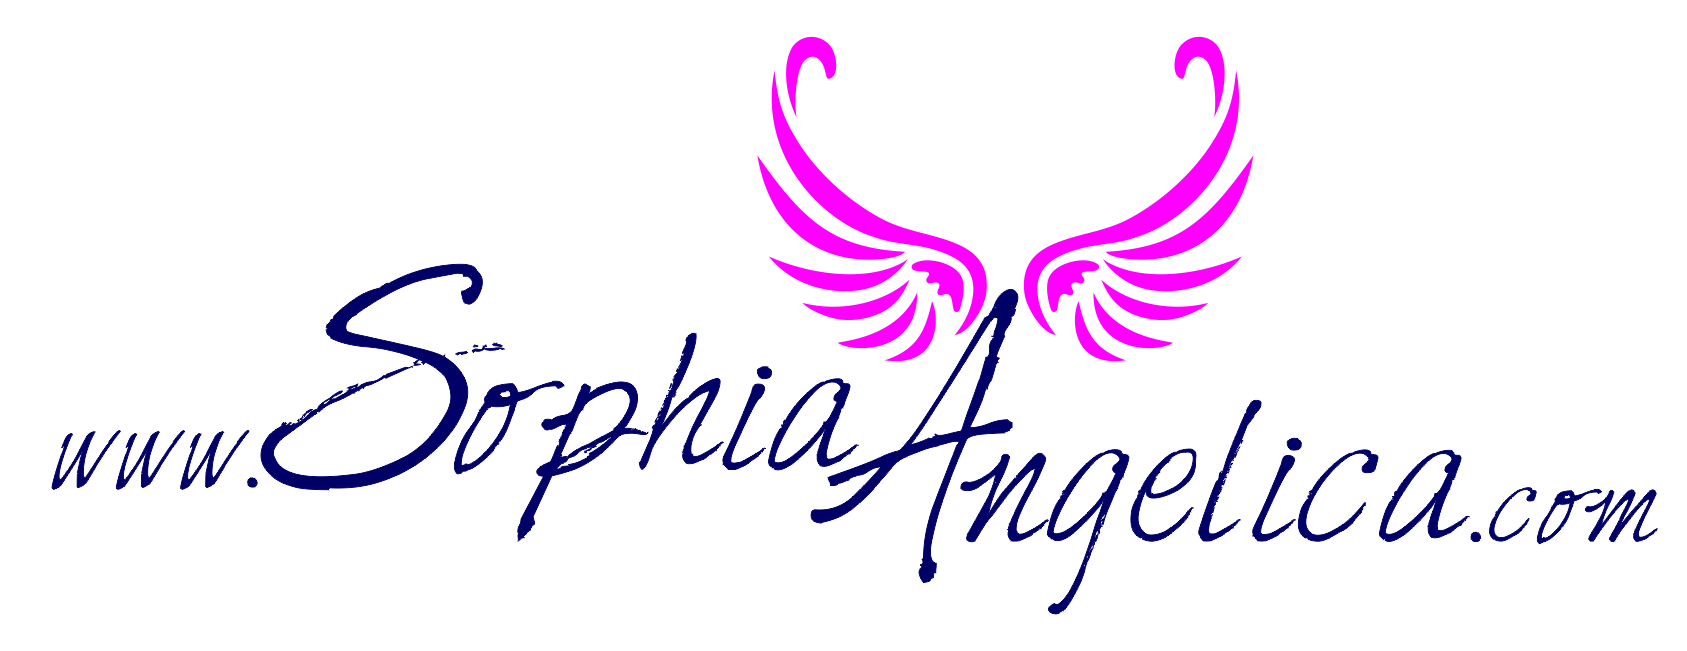 Sophia Angelica